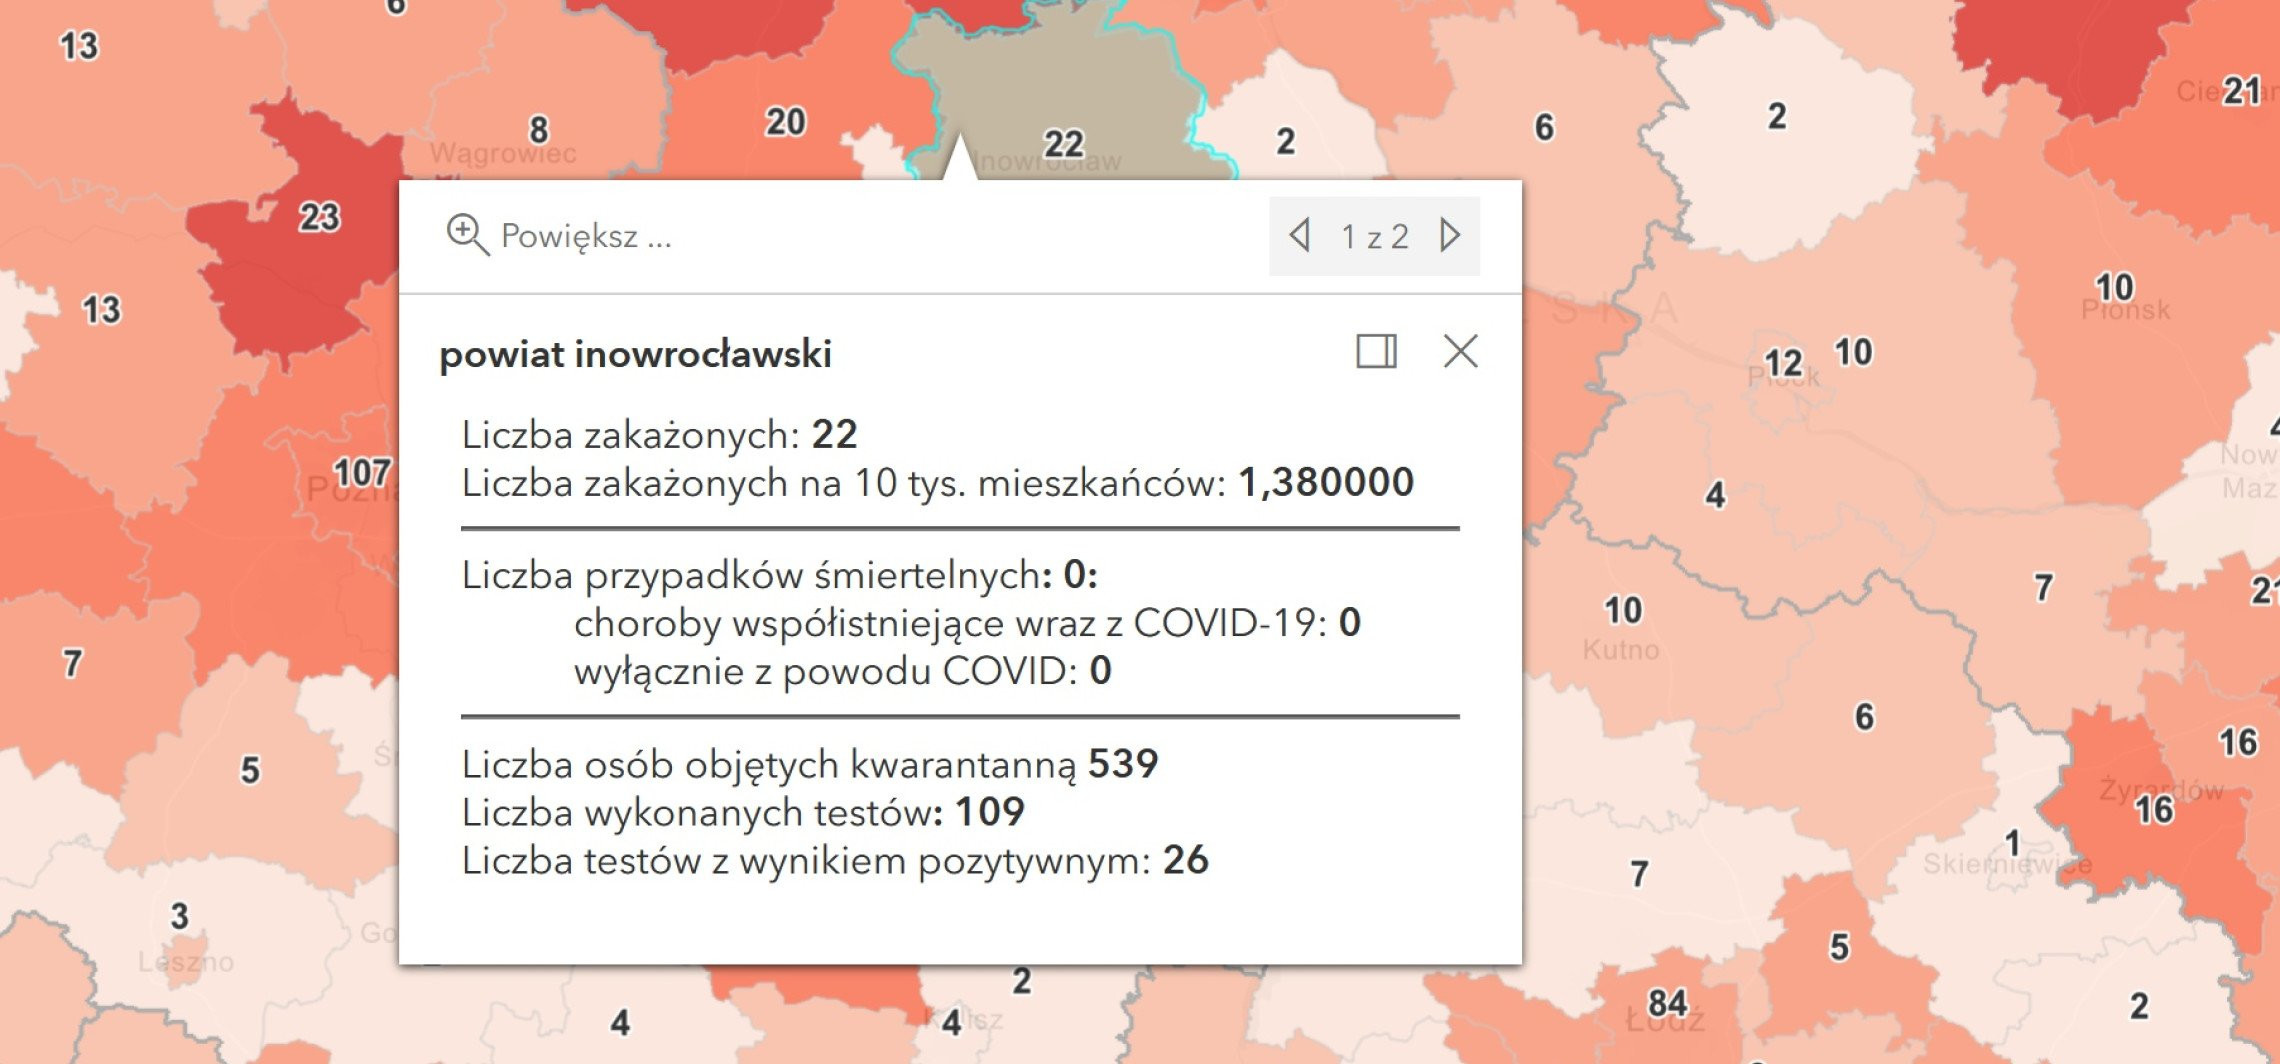 Inowrocław - Koronawirus. Mniej zakażeń i zgonów